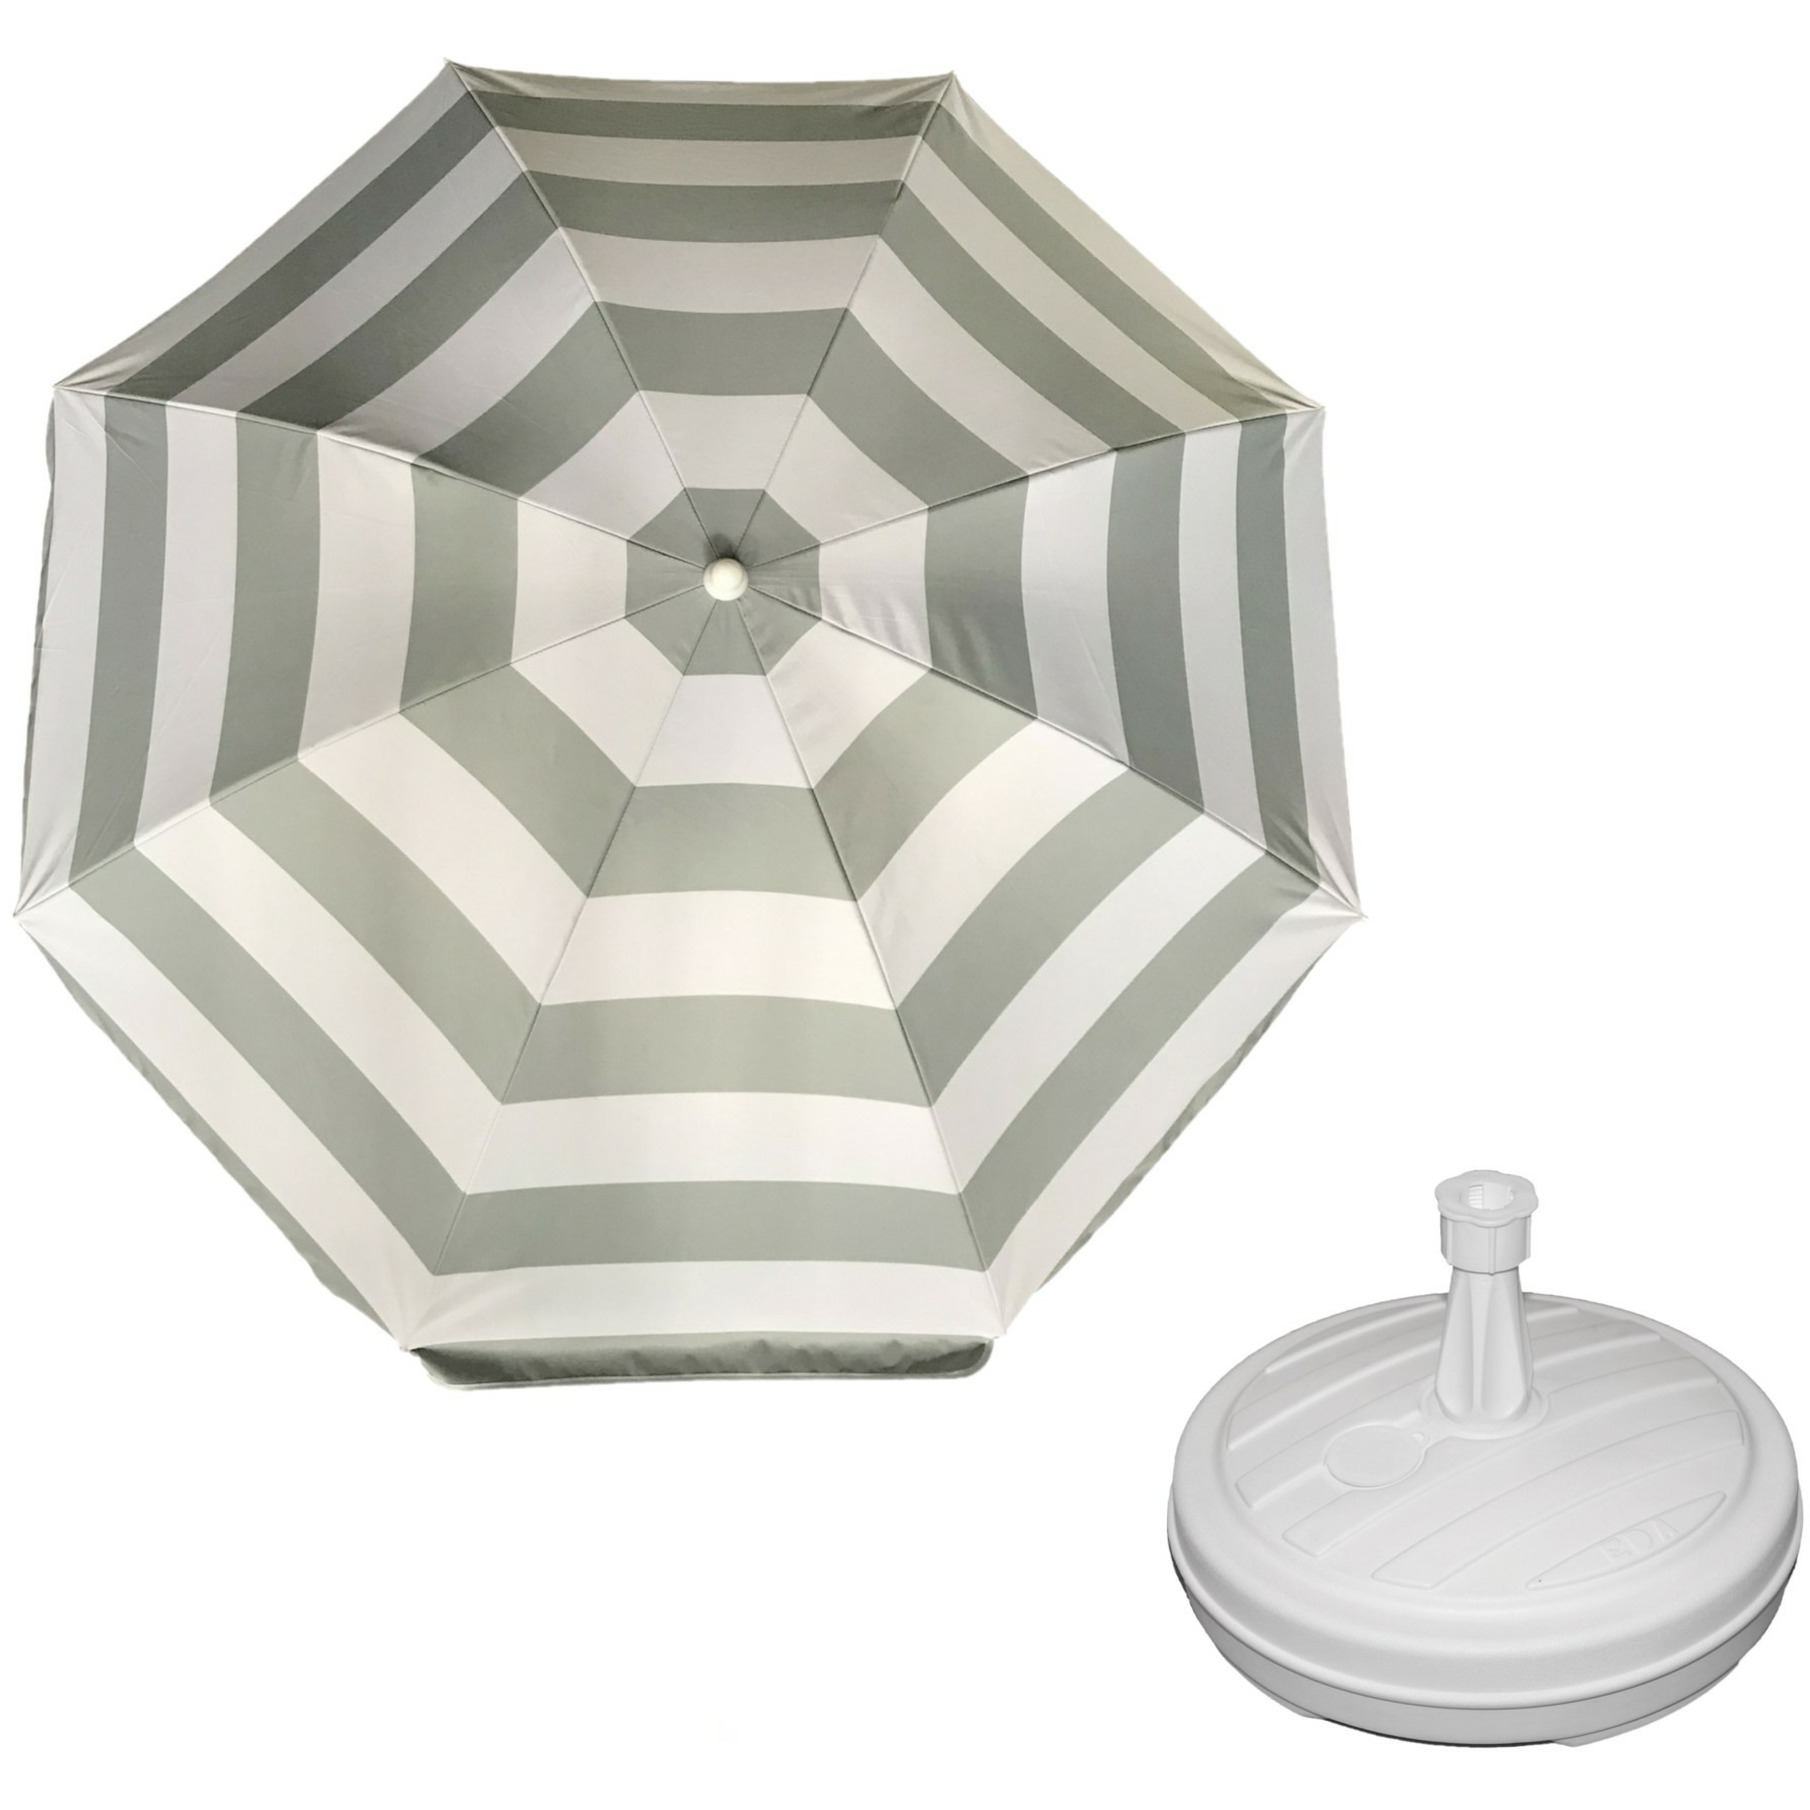 Parasol Zilver-wit D140 cm incl. draagtas parasolvoet 42 cm